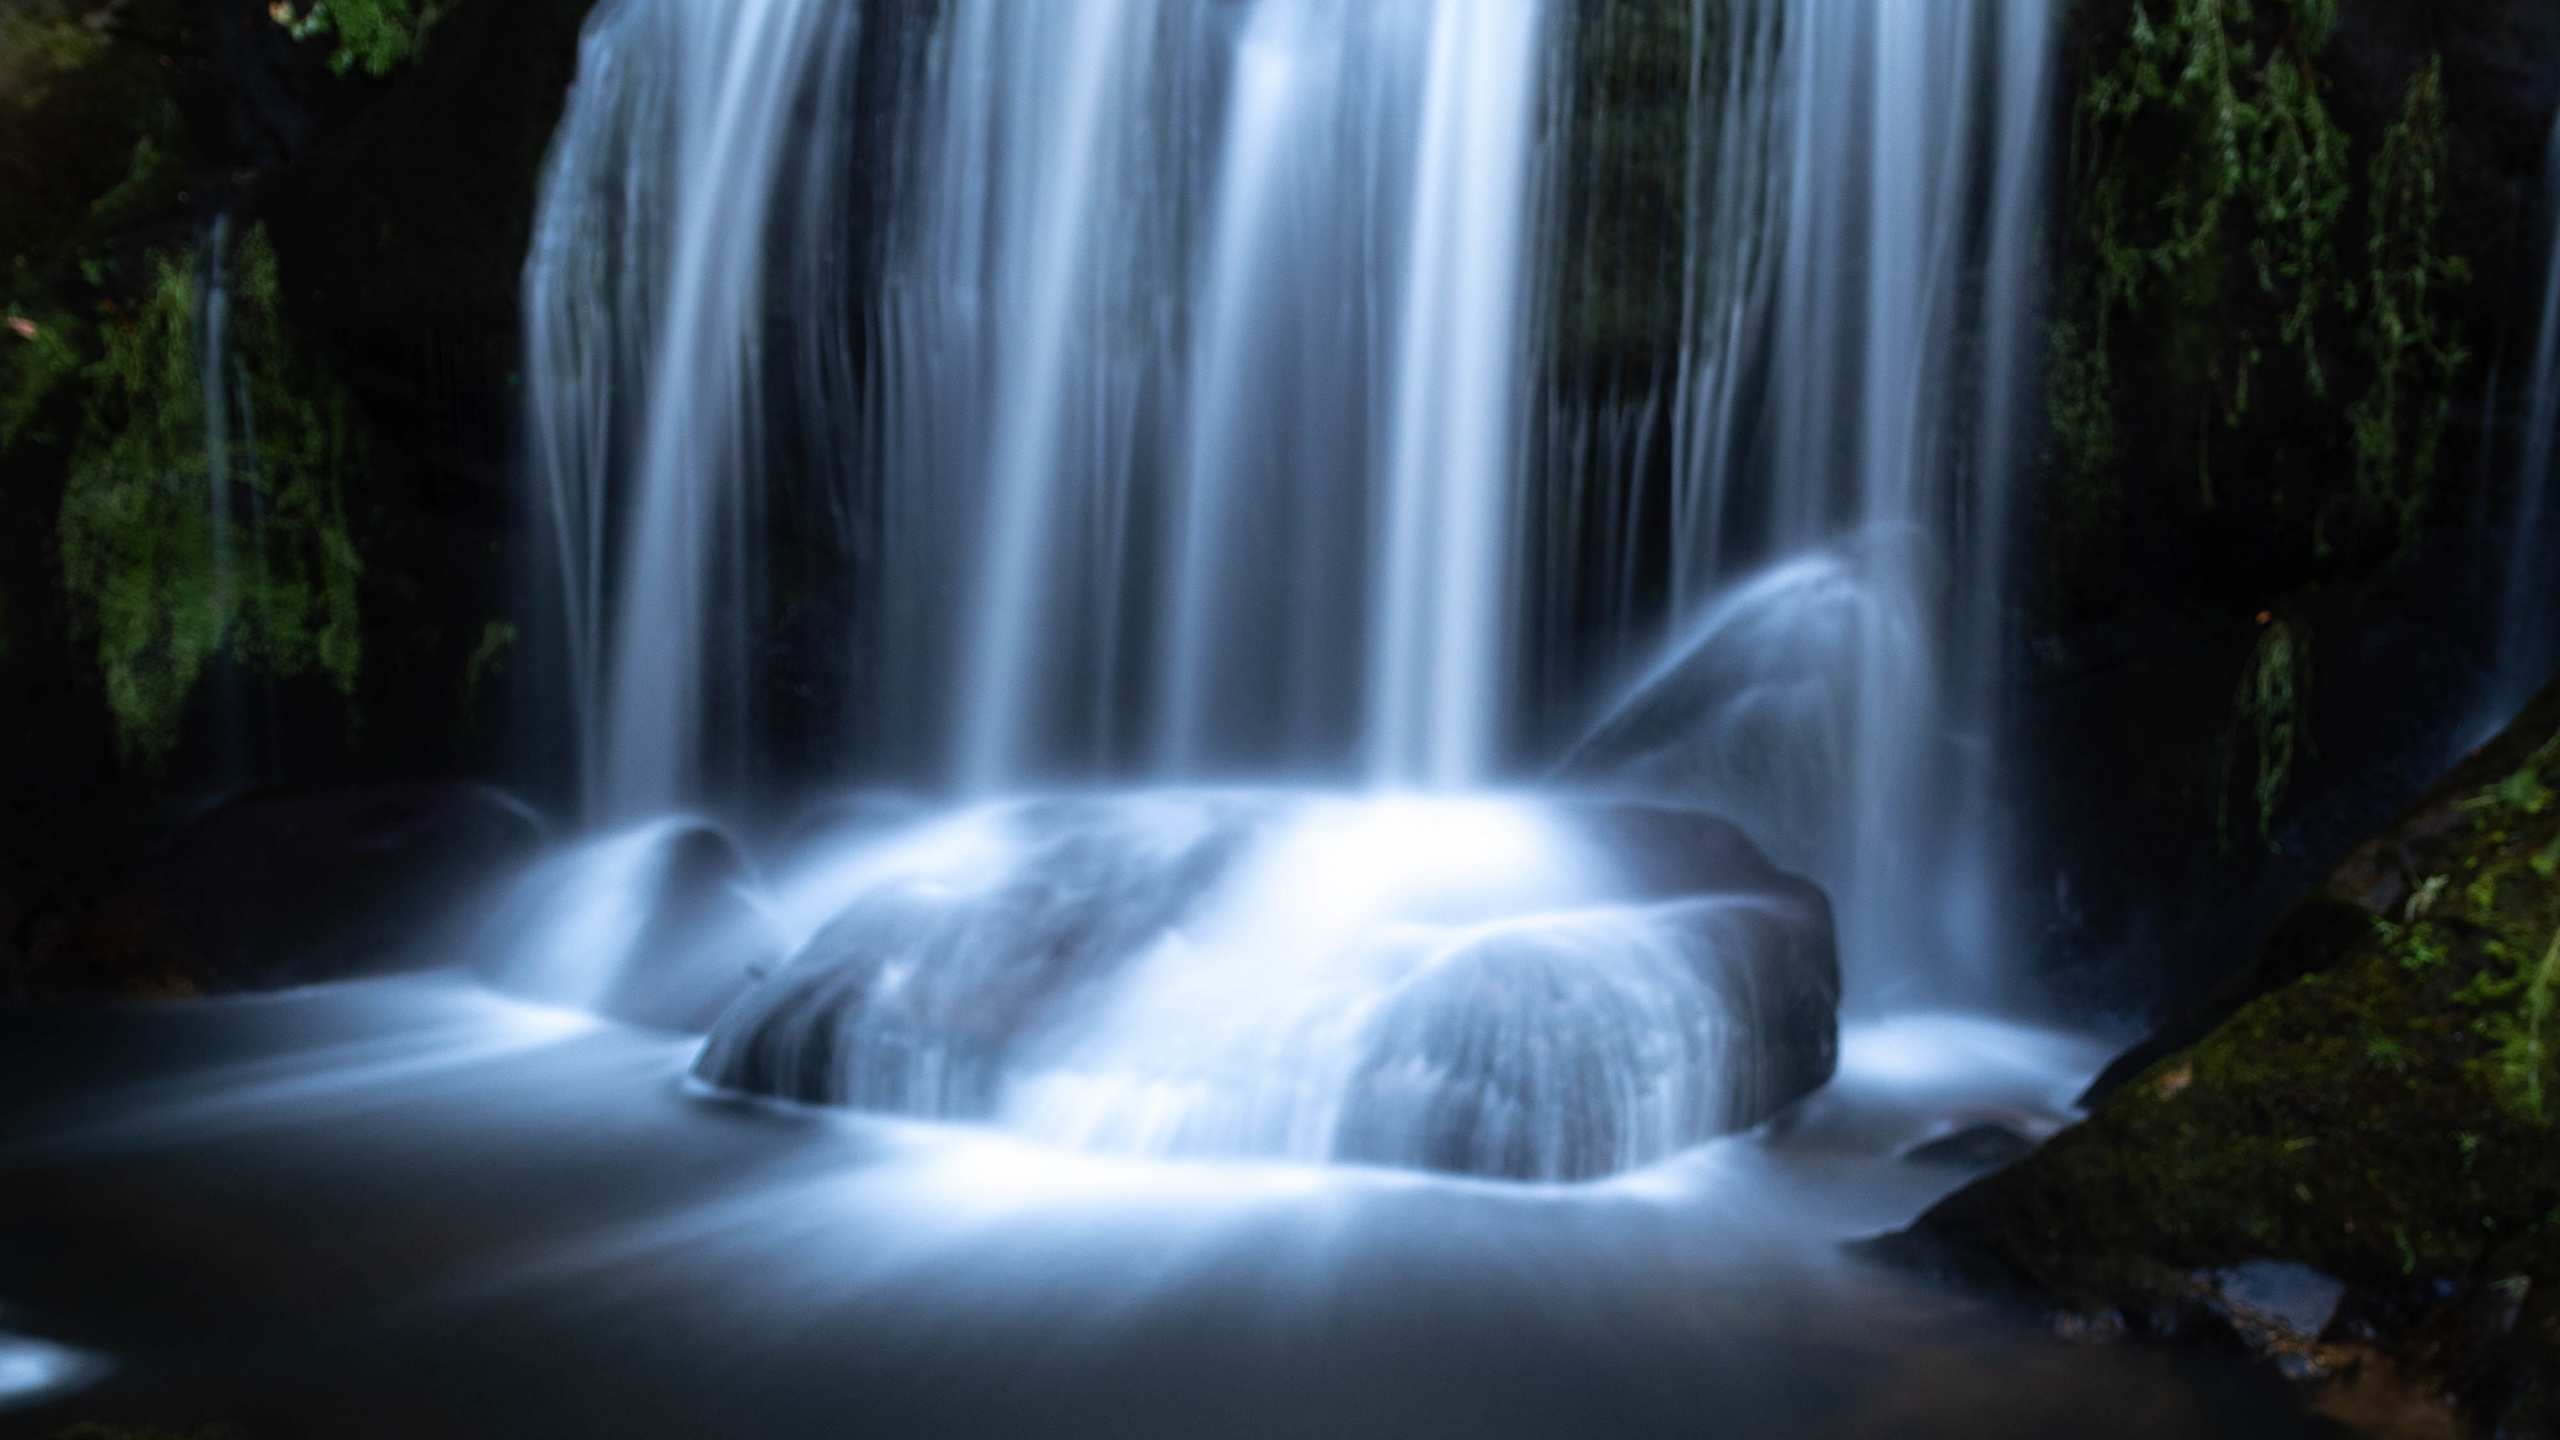 Wasserfall, Gewässer, Wasserressourcen, Naturlandschaft, Natur. Wallpaper in 2560x1440 Resolution